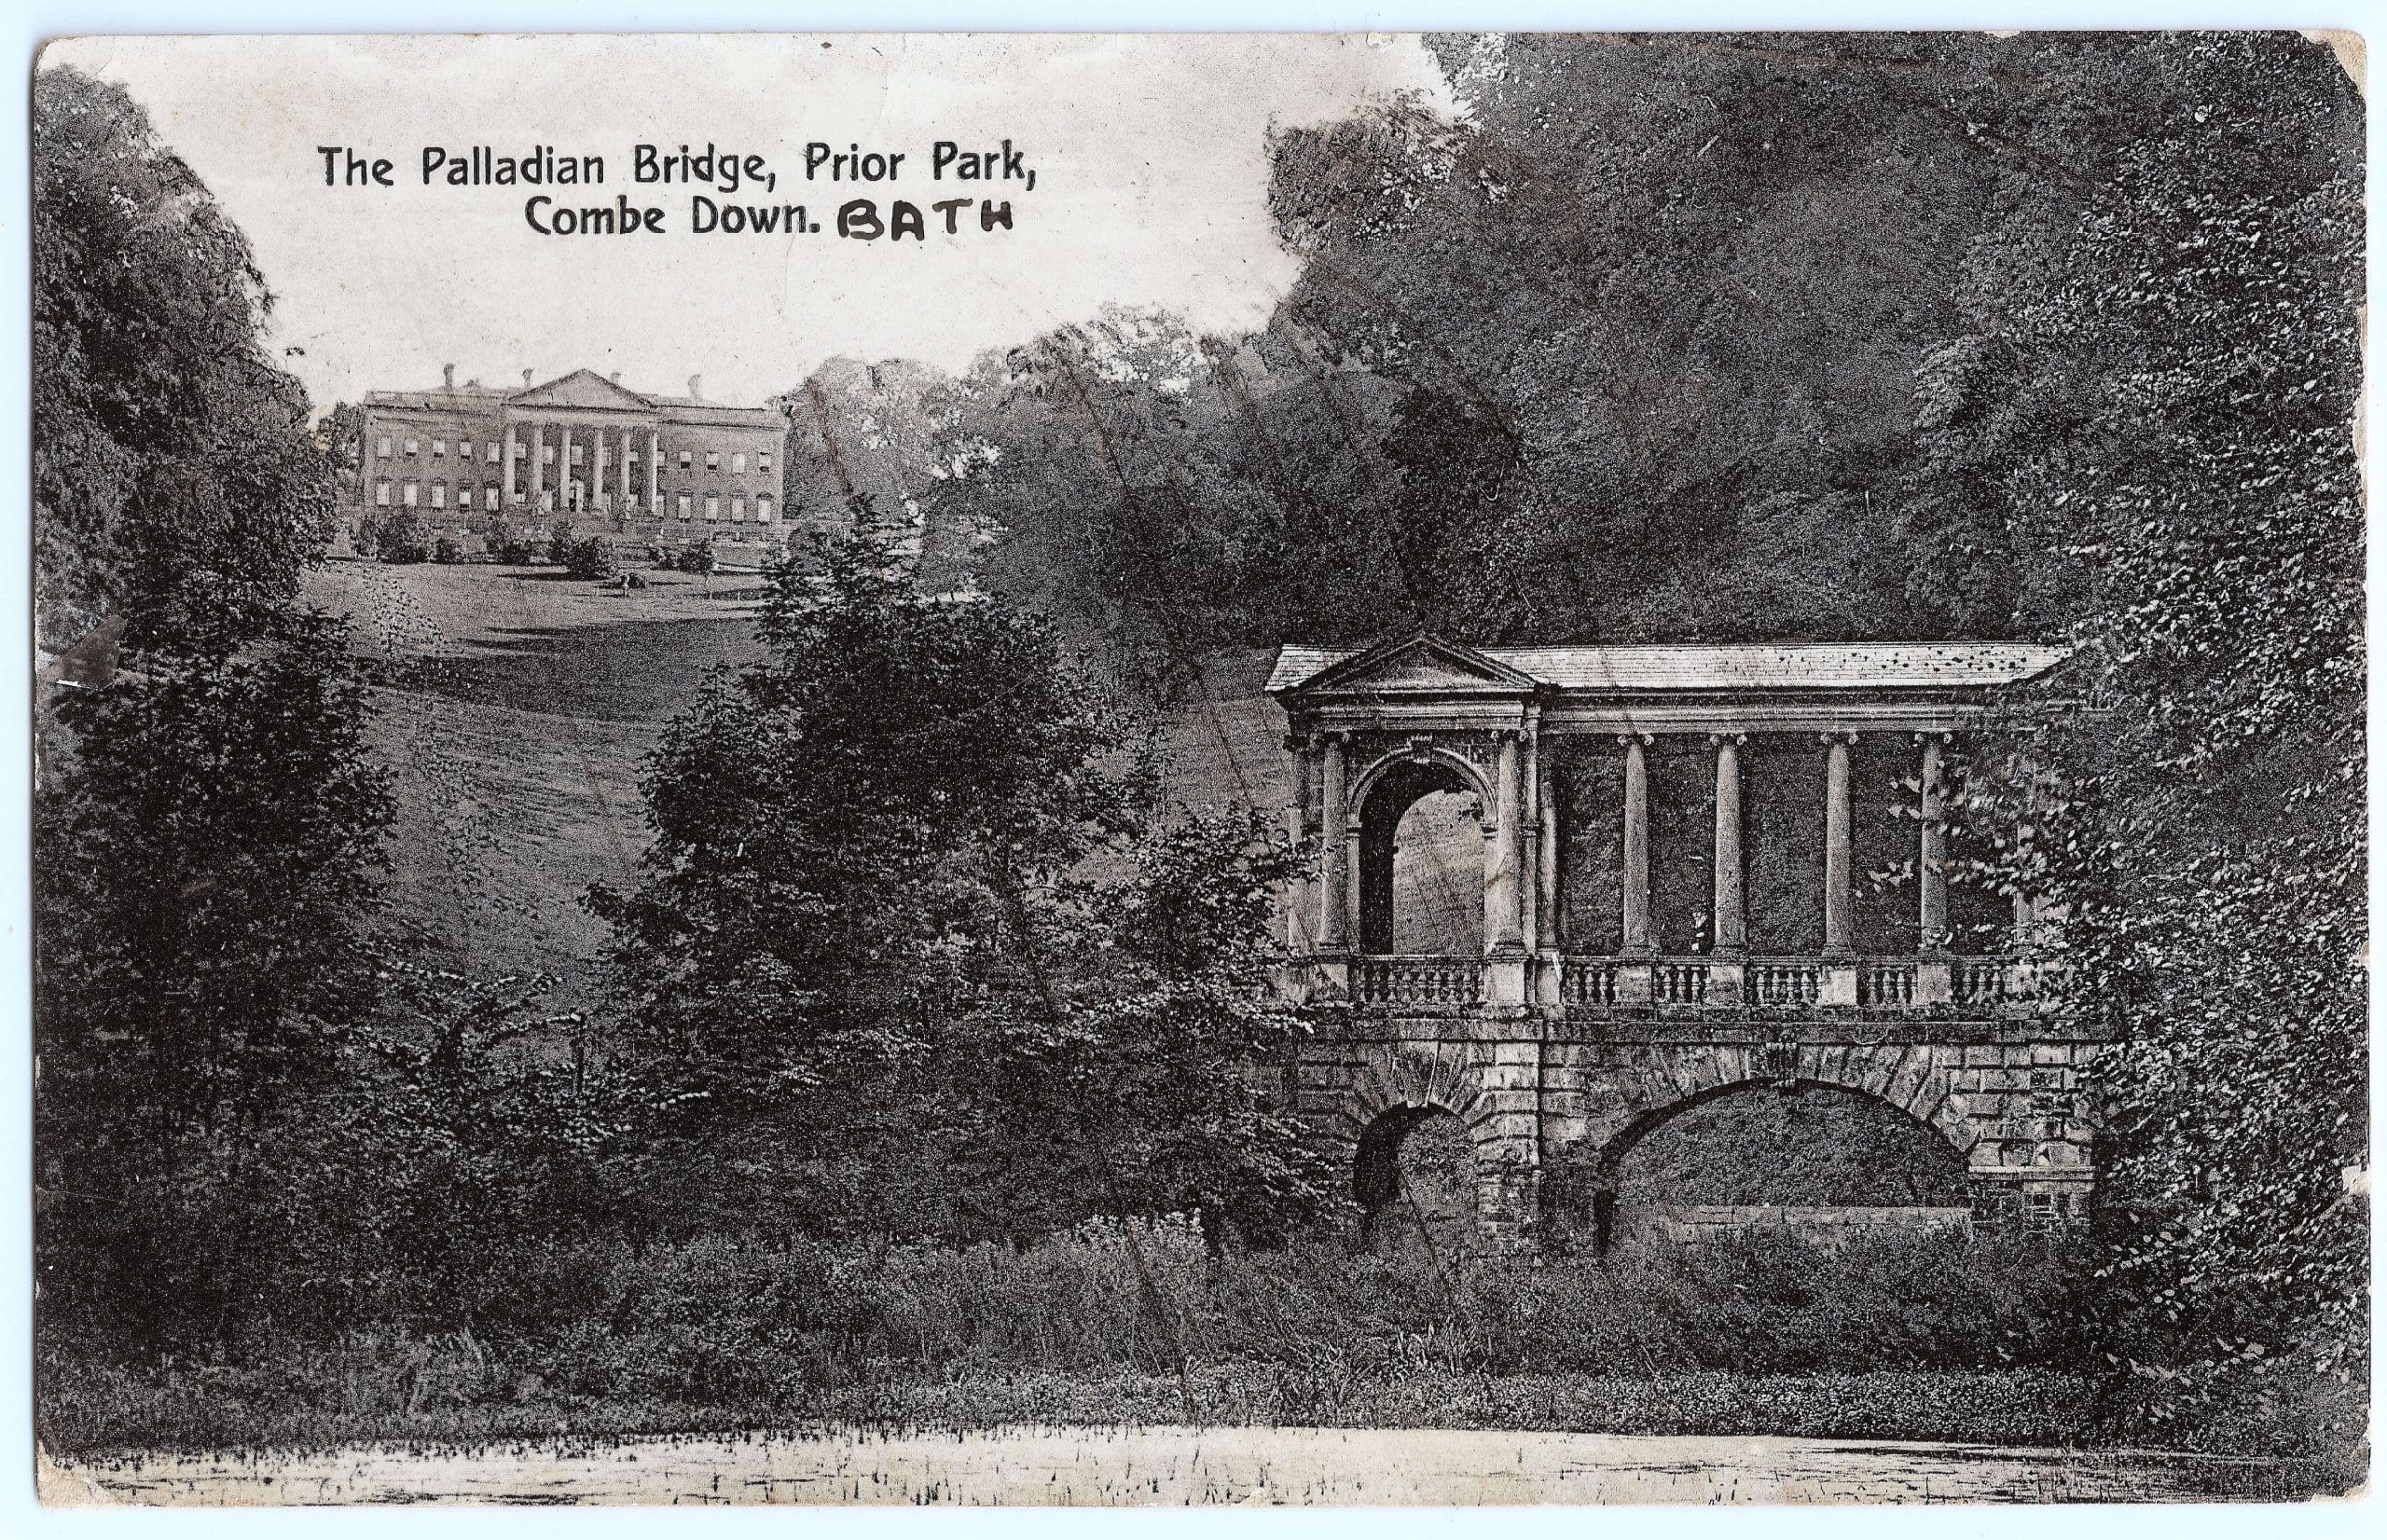 Palladian Bridge, Prior Park, 1914